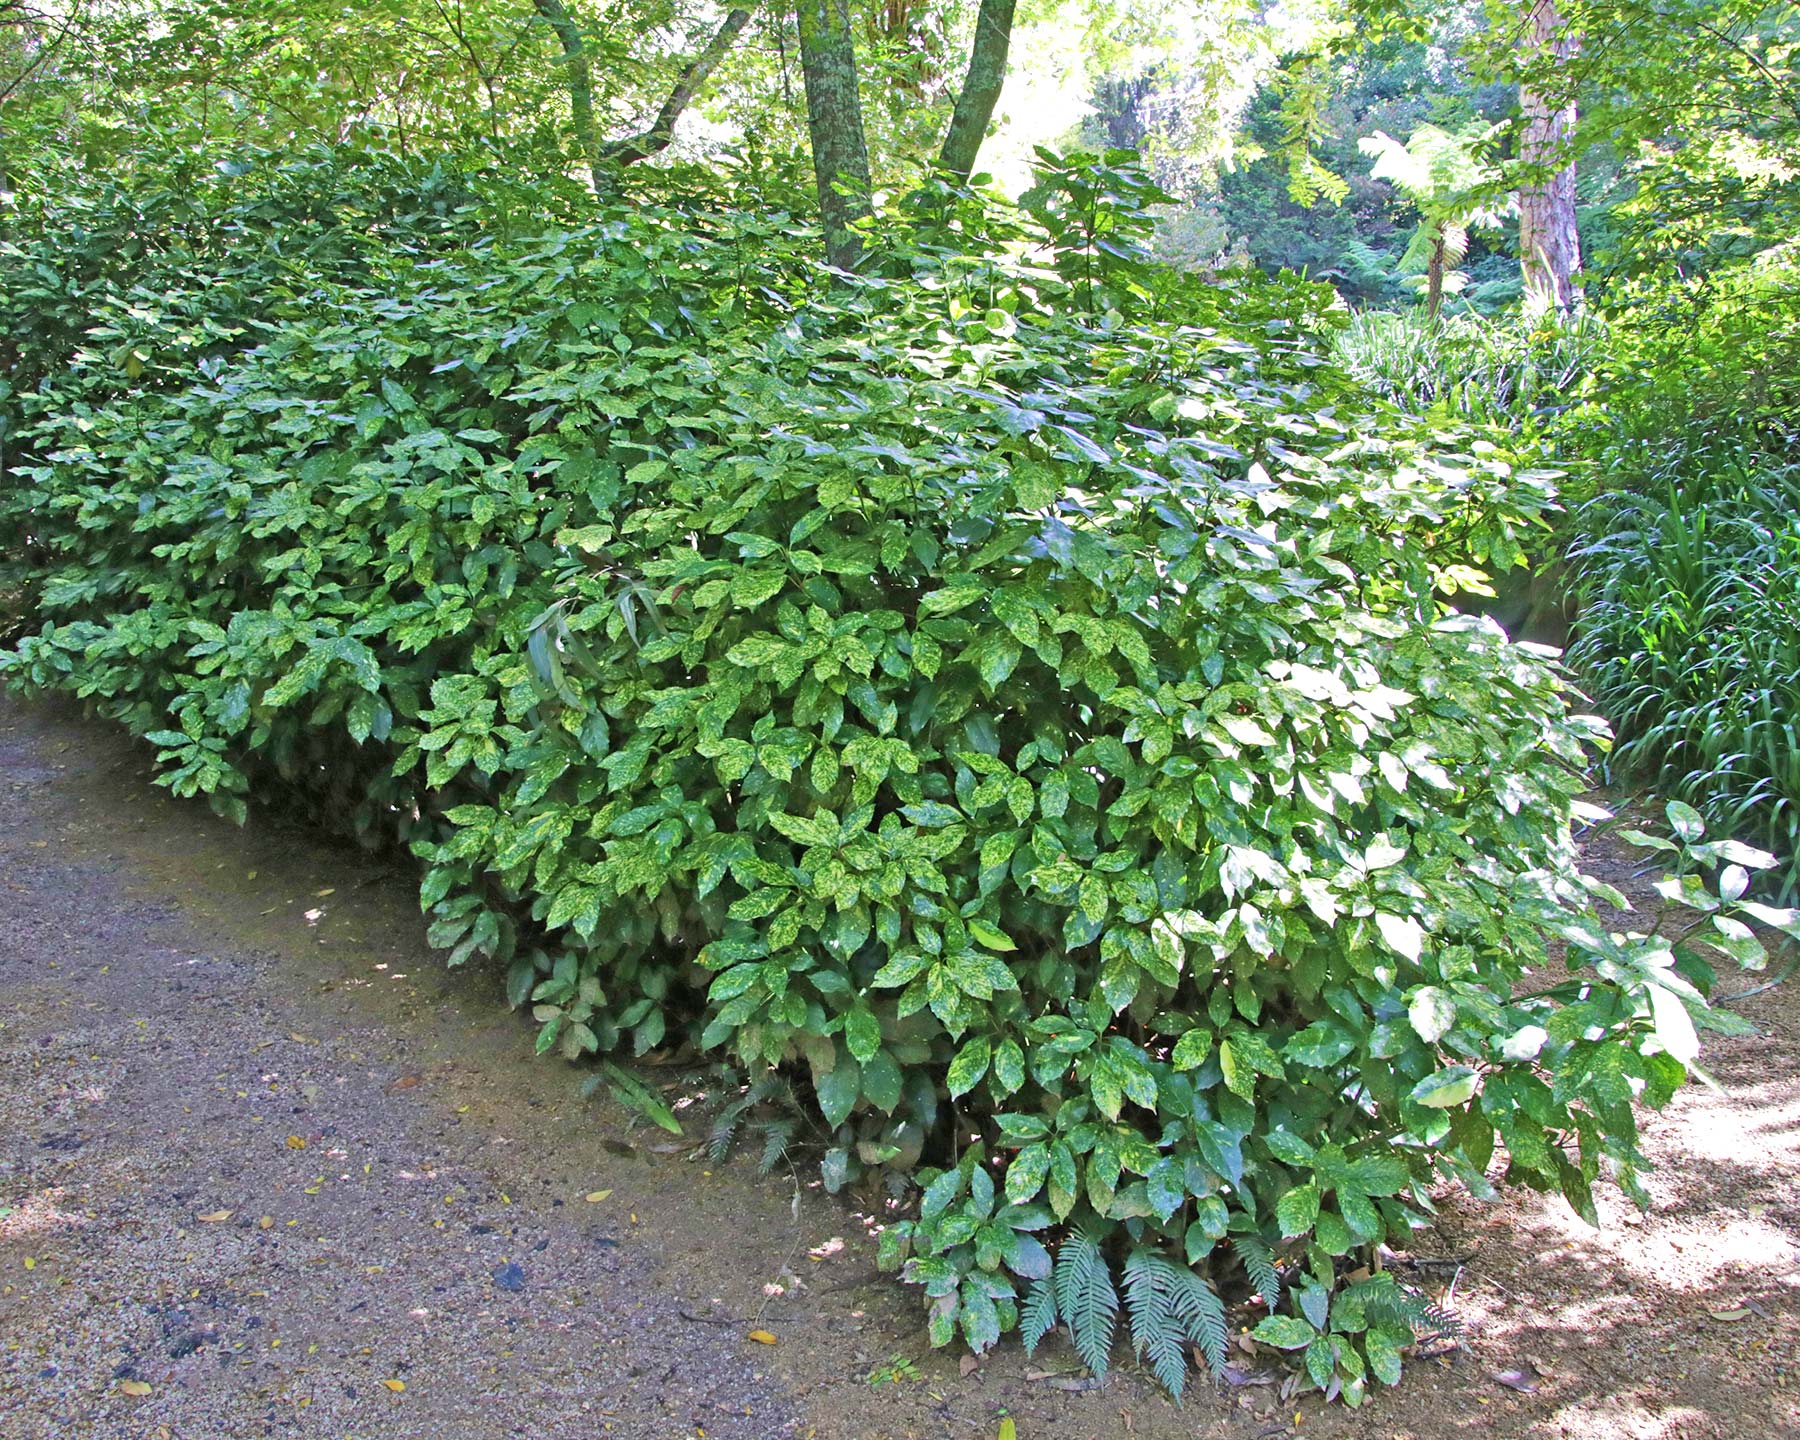 Aucuba japonica variegata